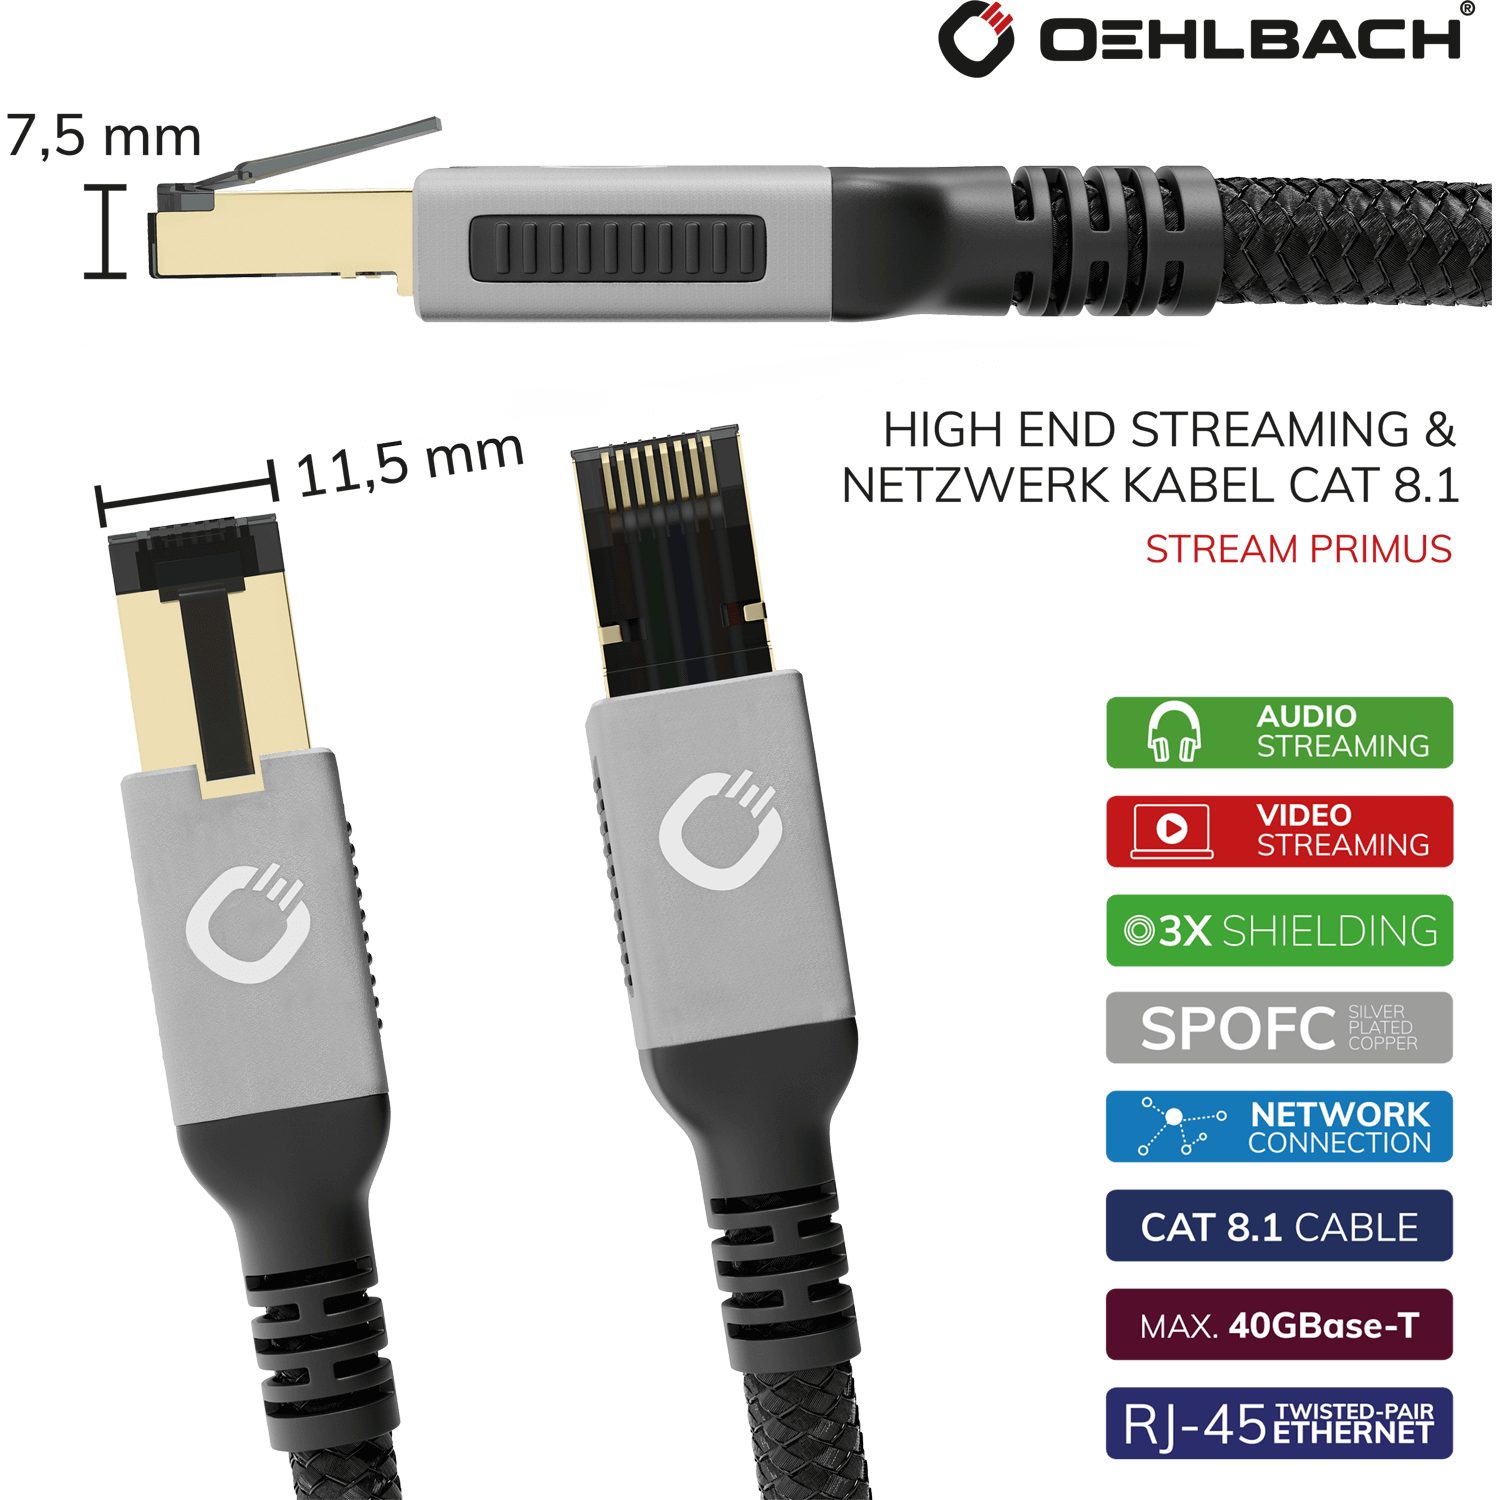 Oehlbach Cat High RJ-45, & End Primus LAN-Kabel, (100 RJ45 Netzwerk Kabel cm) Stream Streaming 8.1